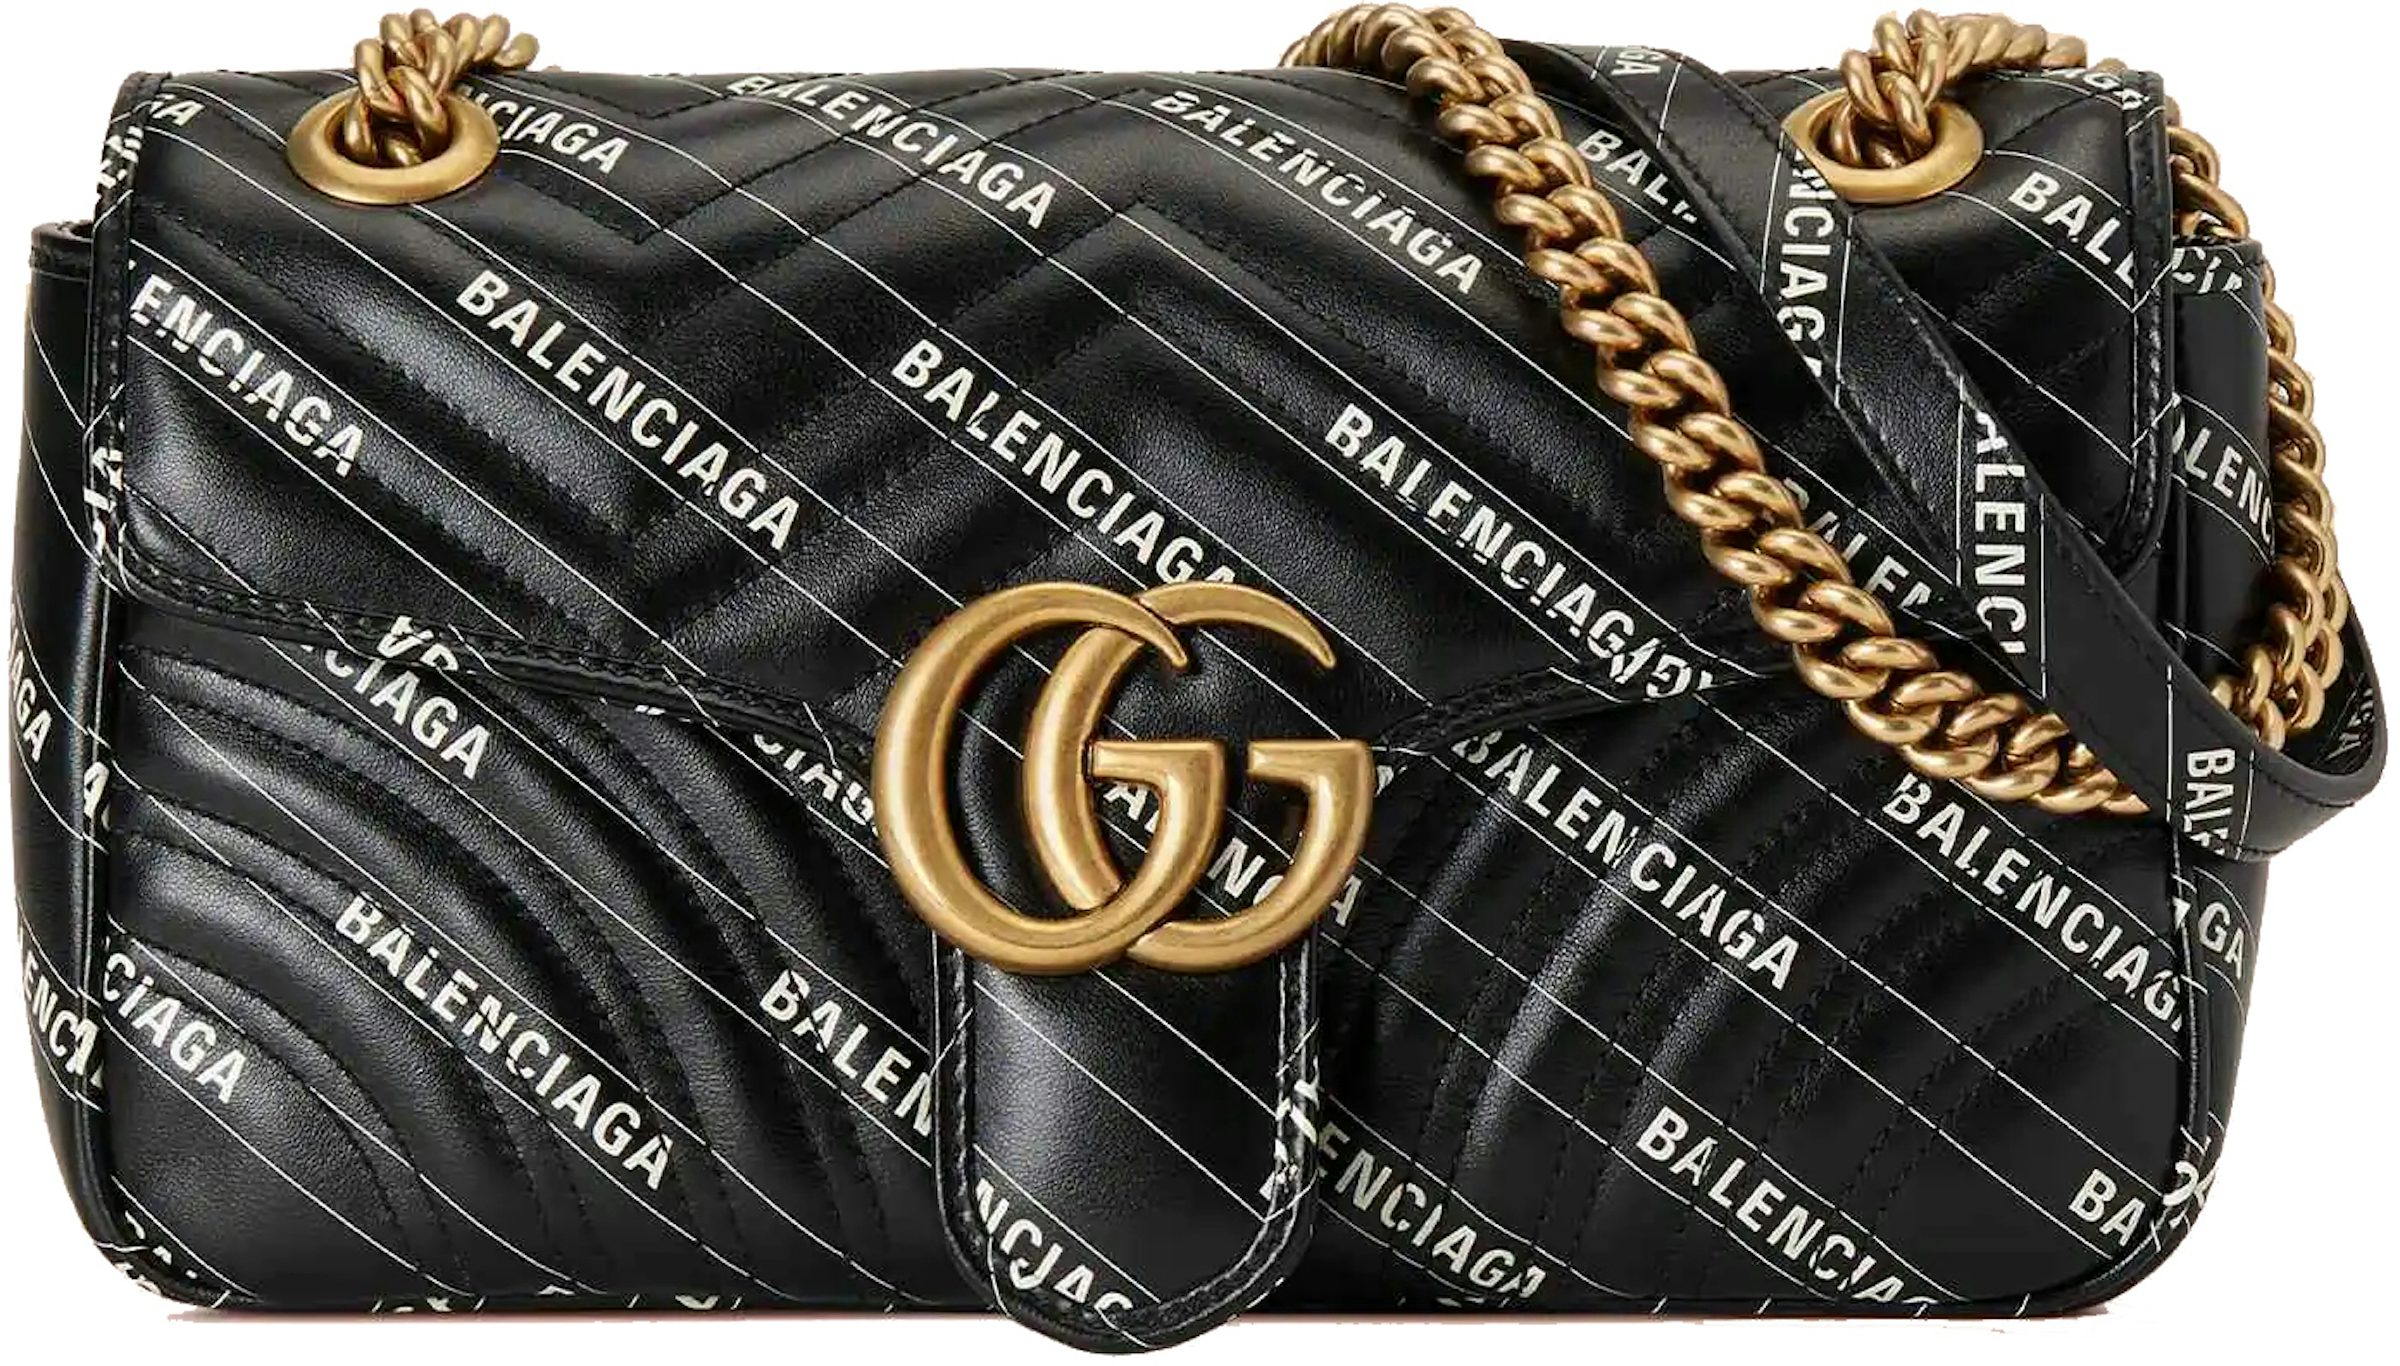 Designer Bags: Balenciaga, Louis Vuitton, Gucci, Dior & More